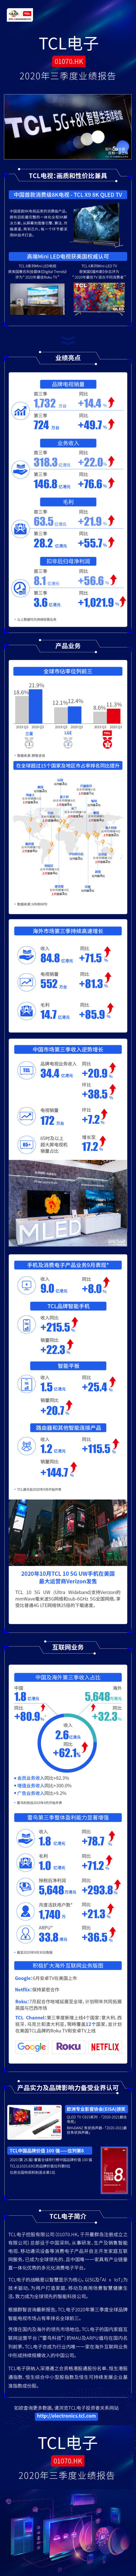 TCL电子2020三季度业绩报告发布 TCL电视共销售724万台